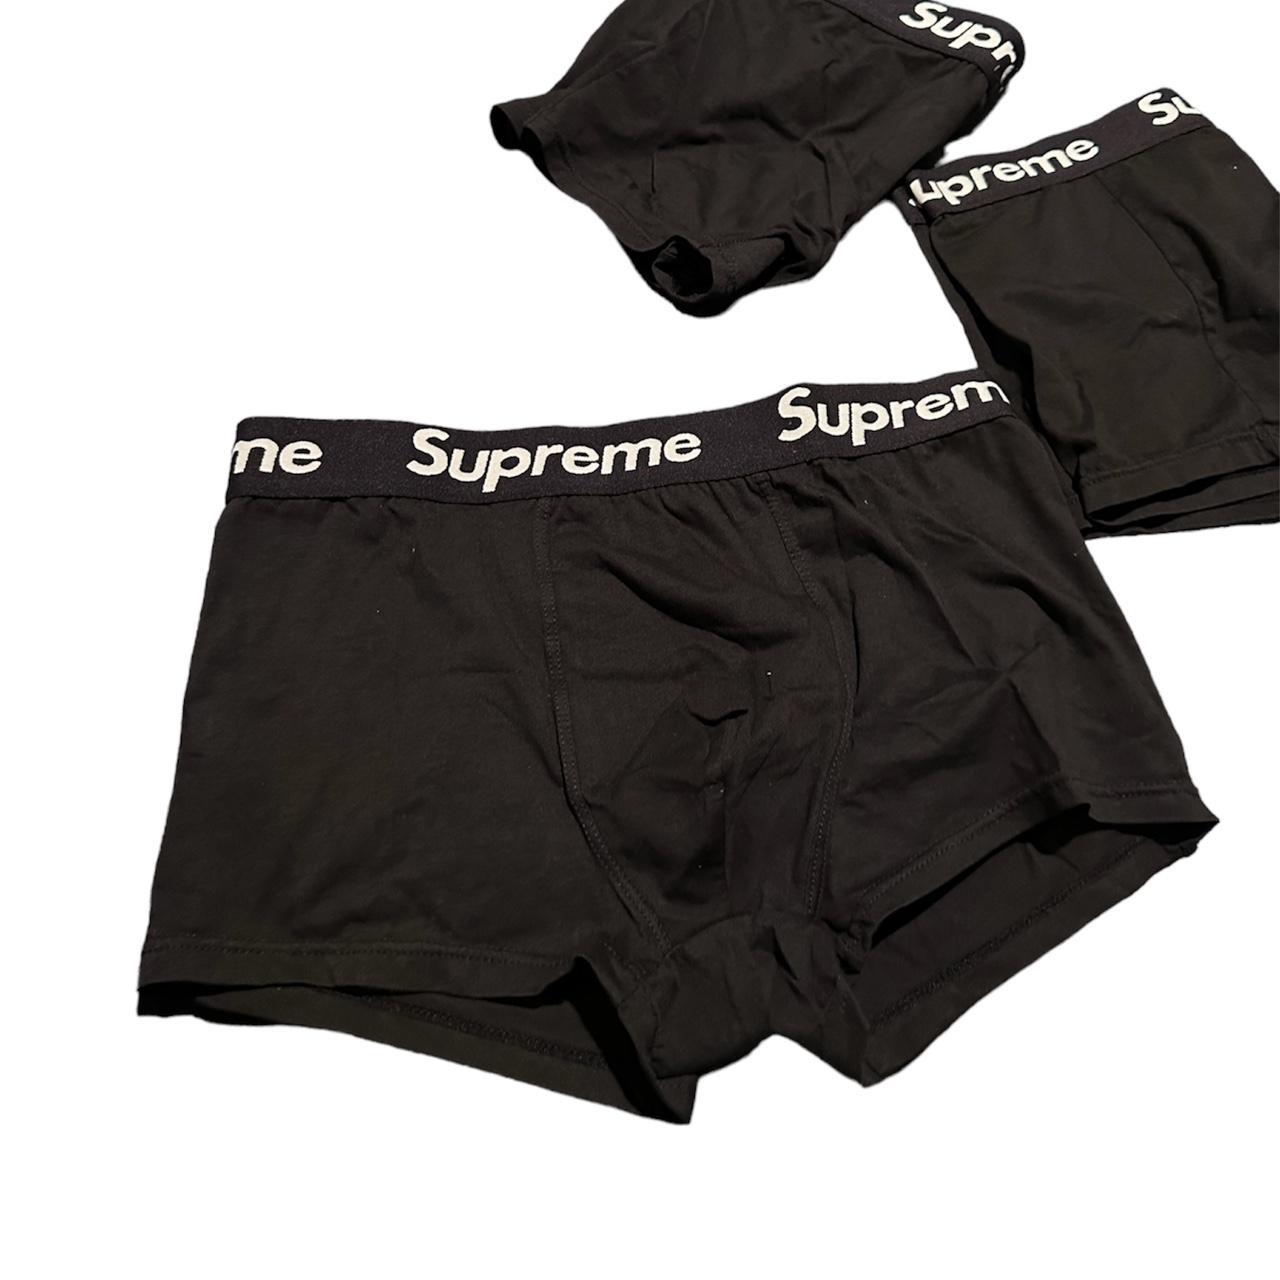 3 Pack of XXL Supreme Underwear Briefs, $35 each